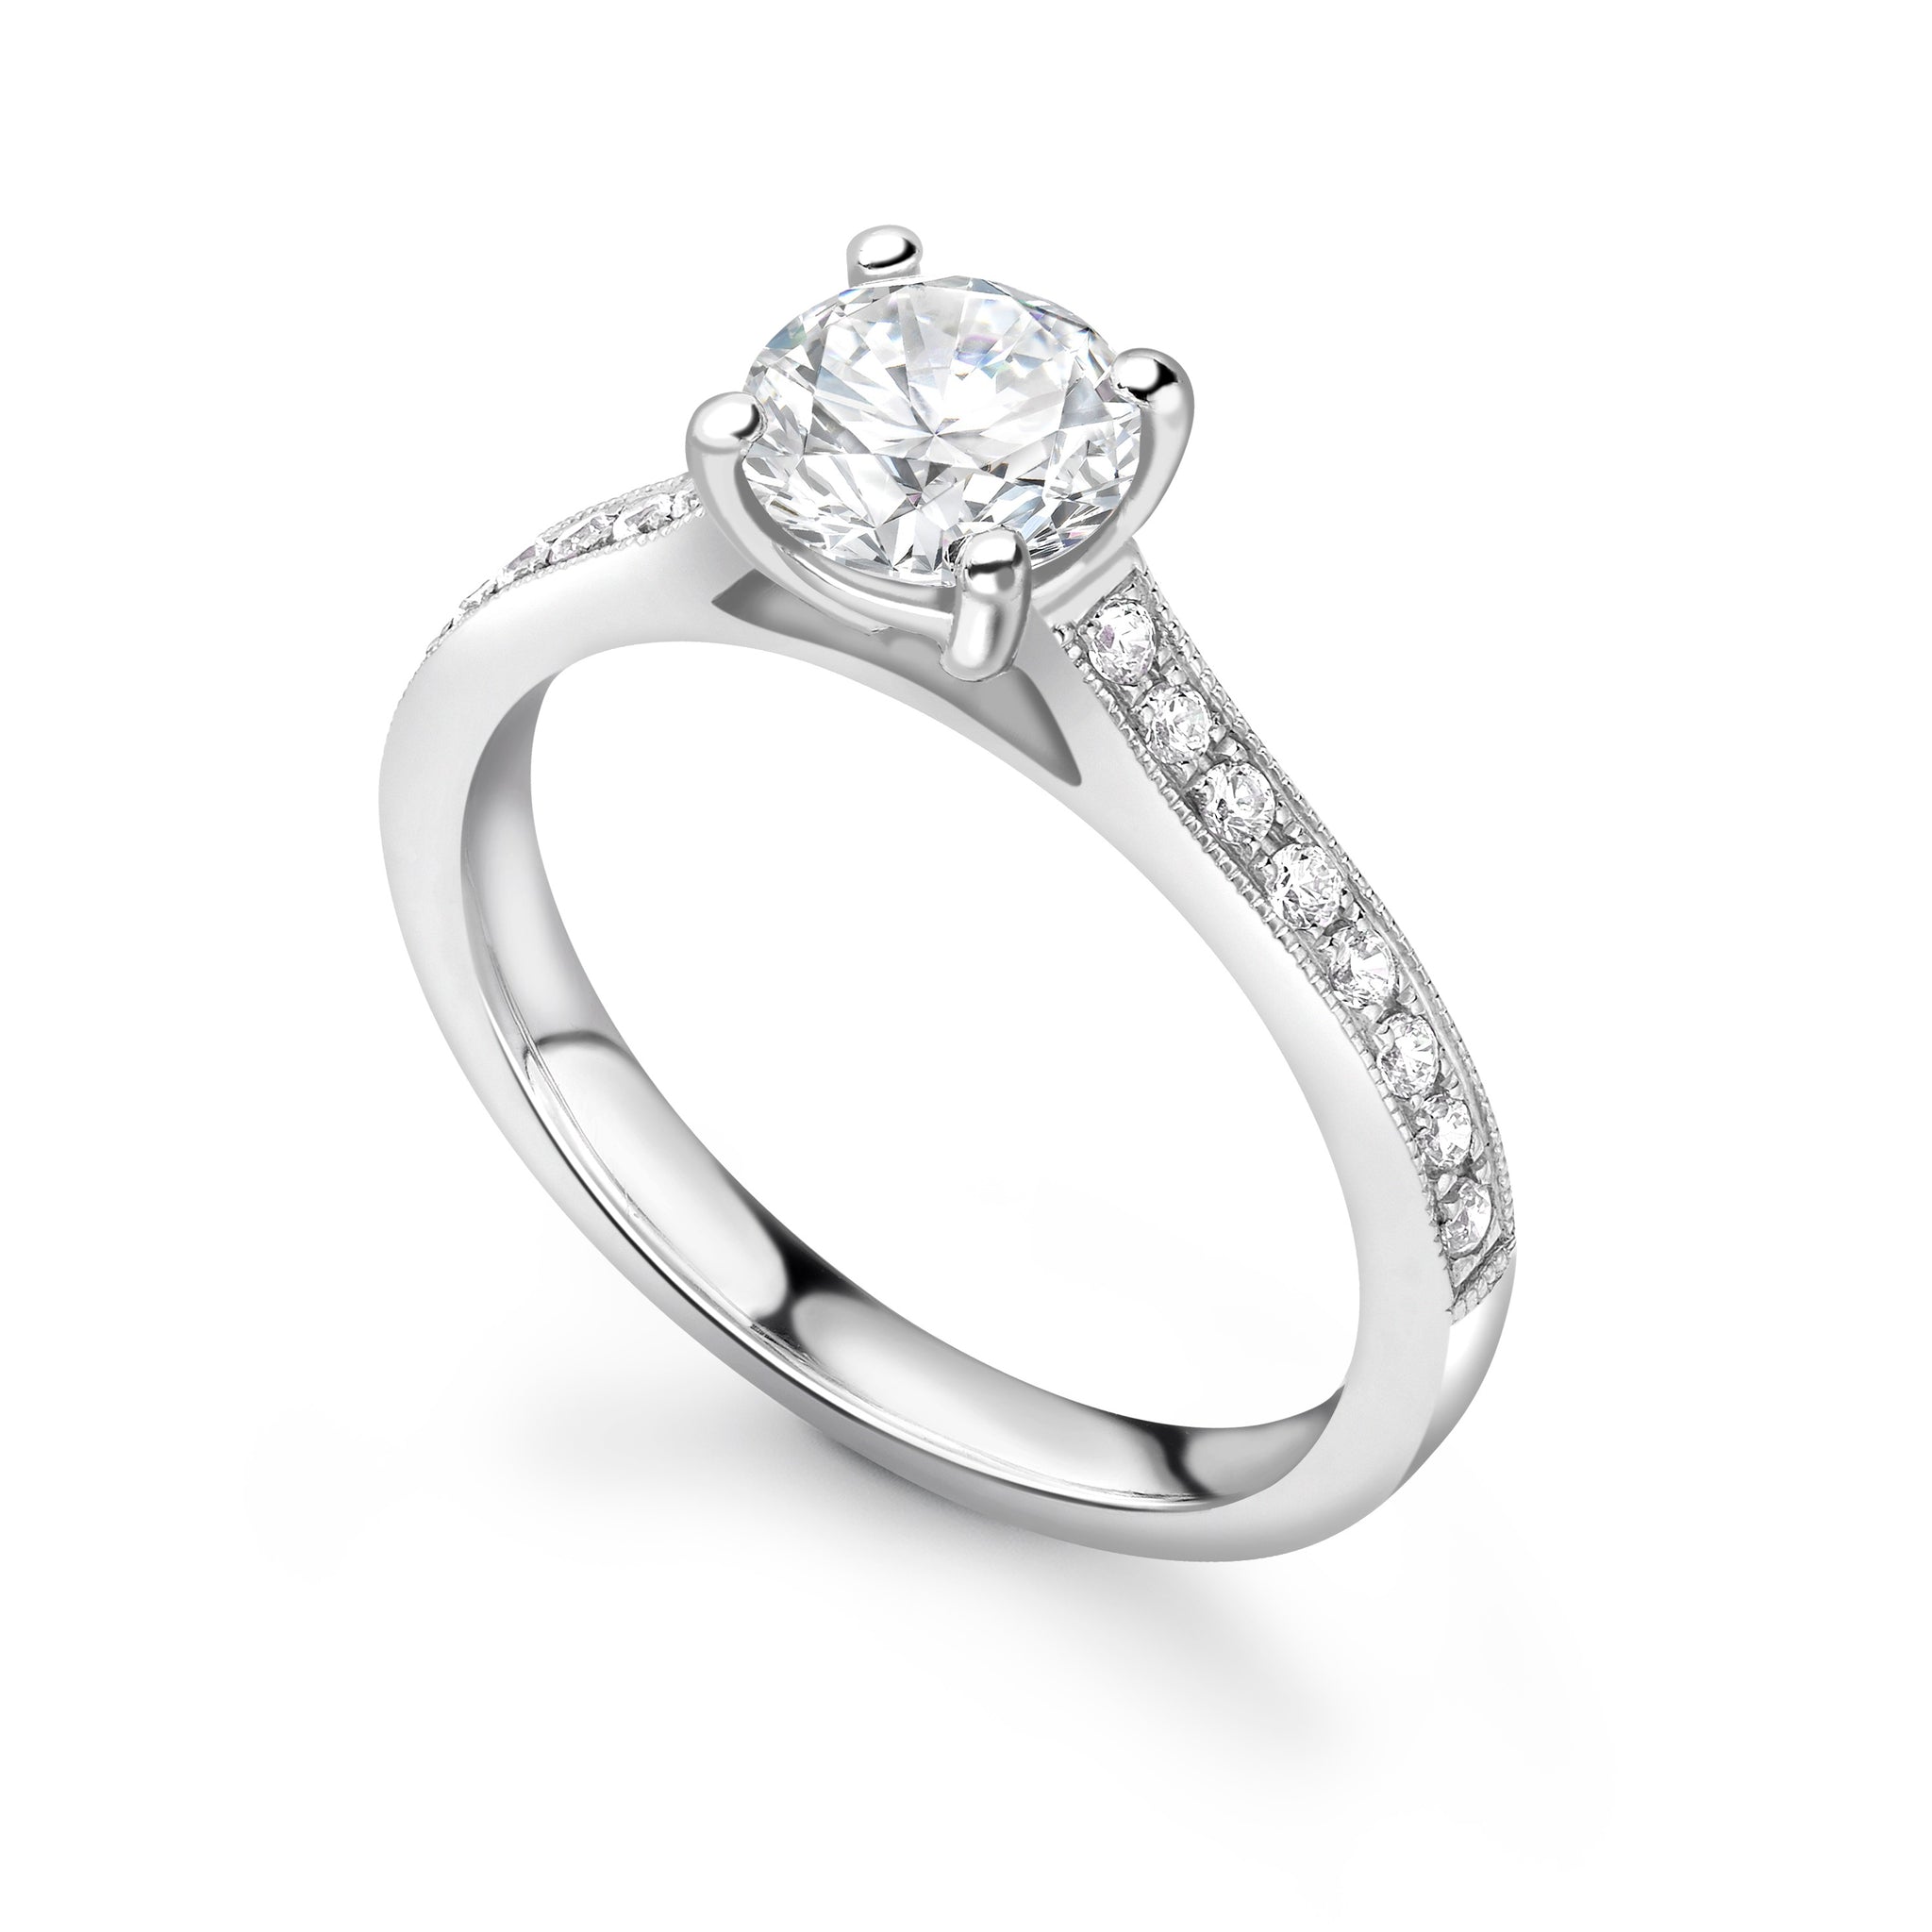 Saffron Engagement Ring